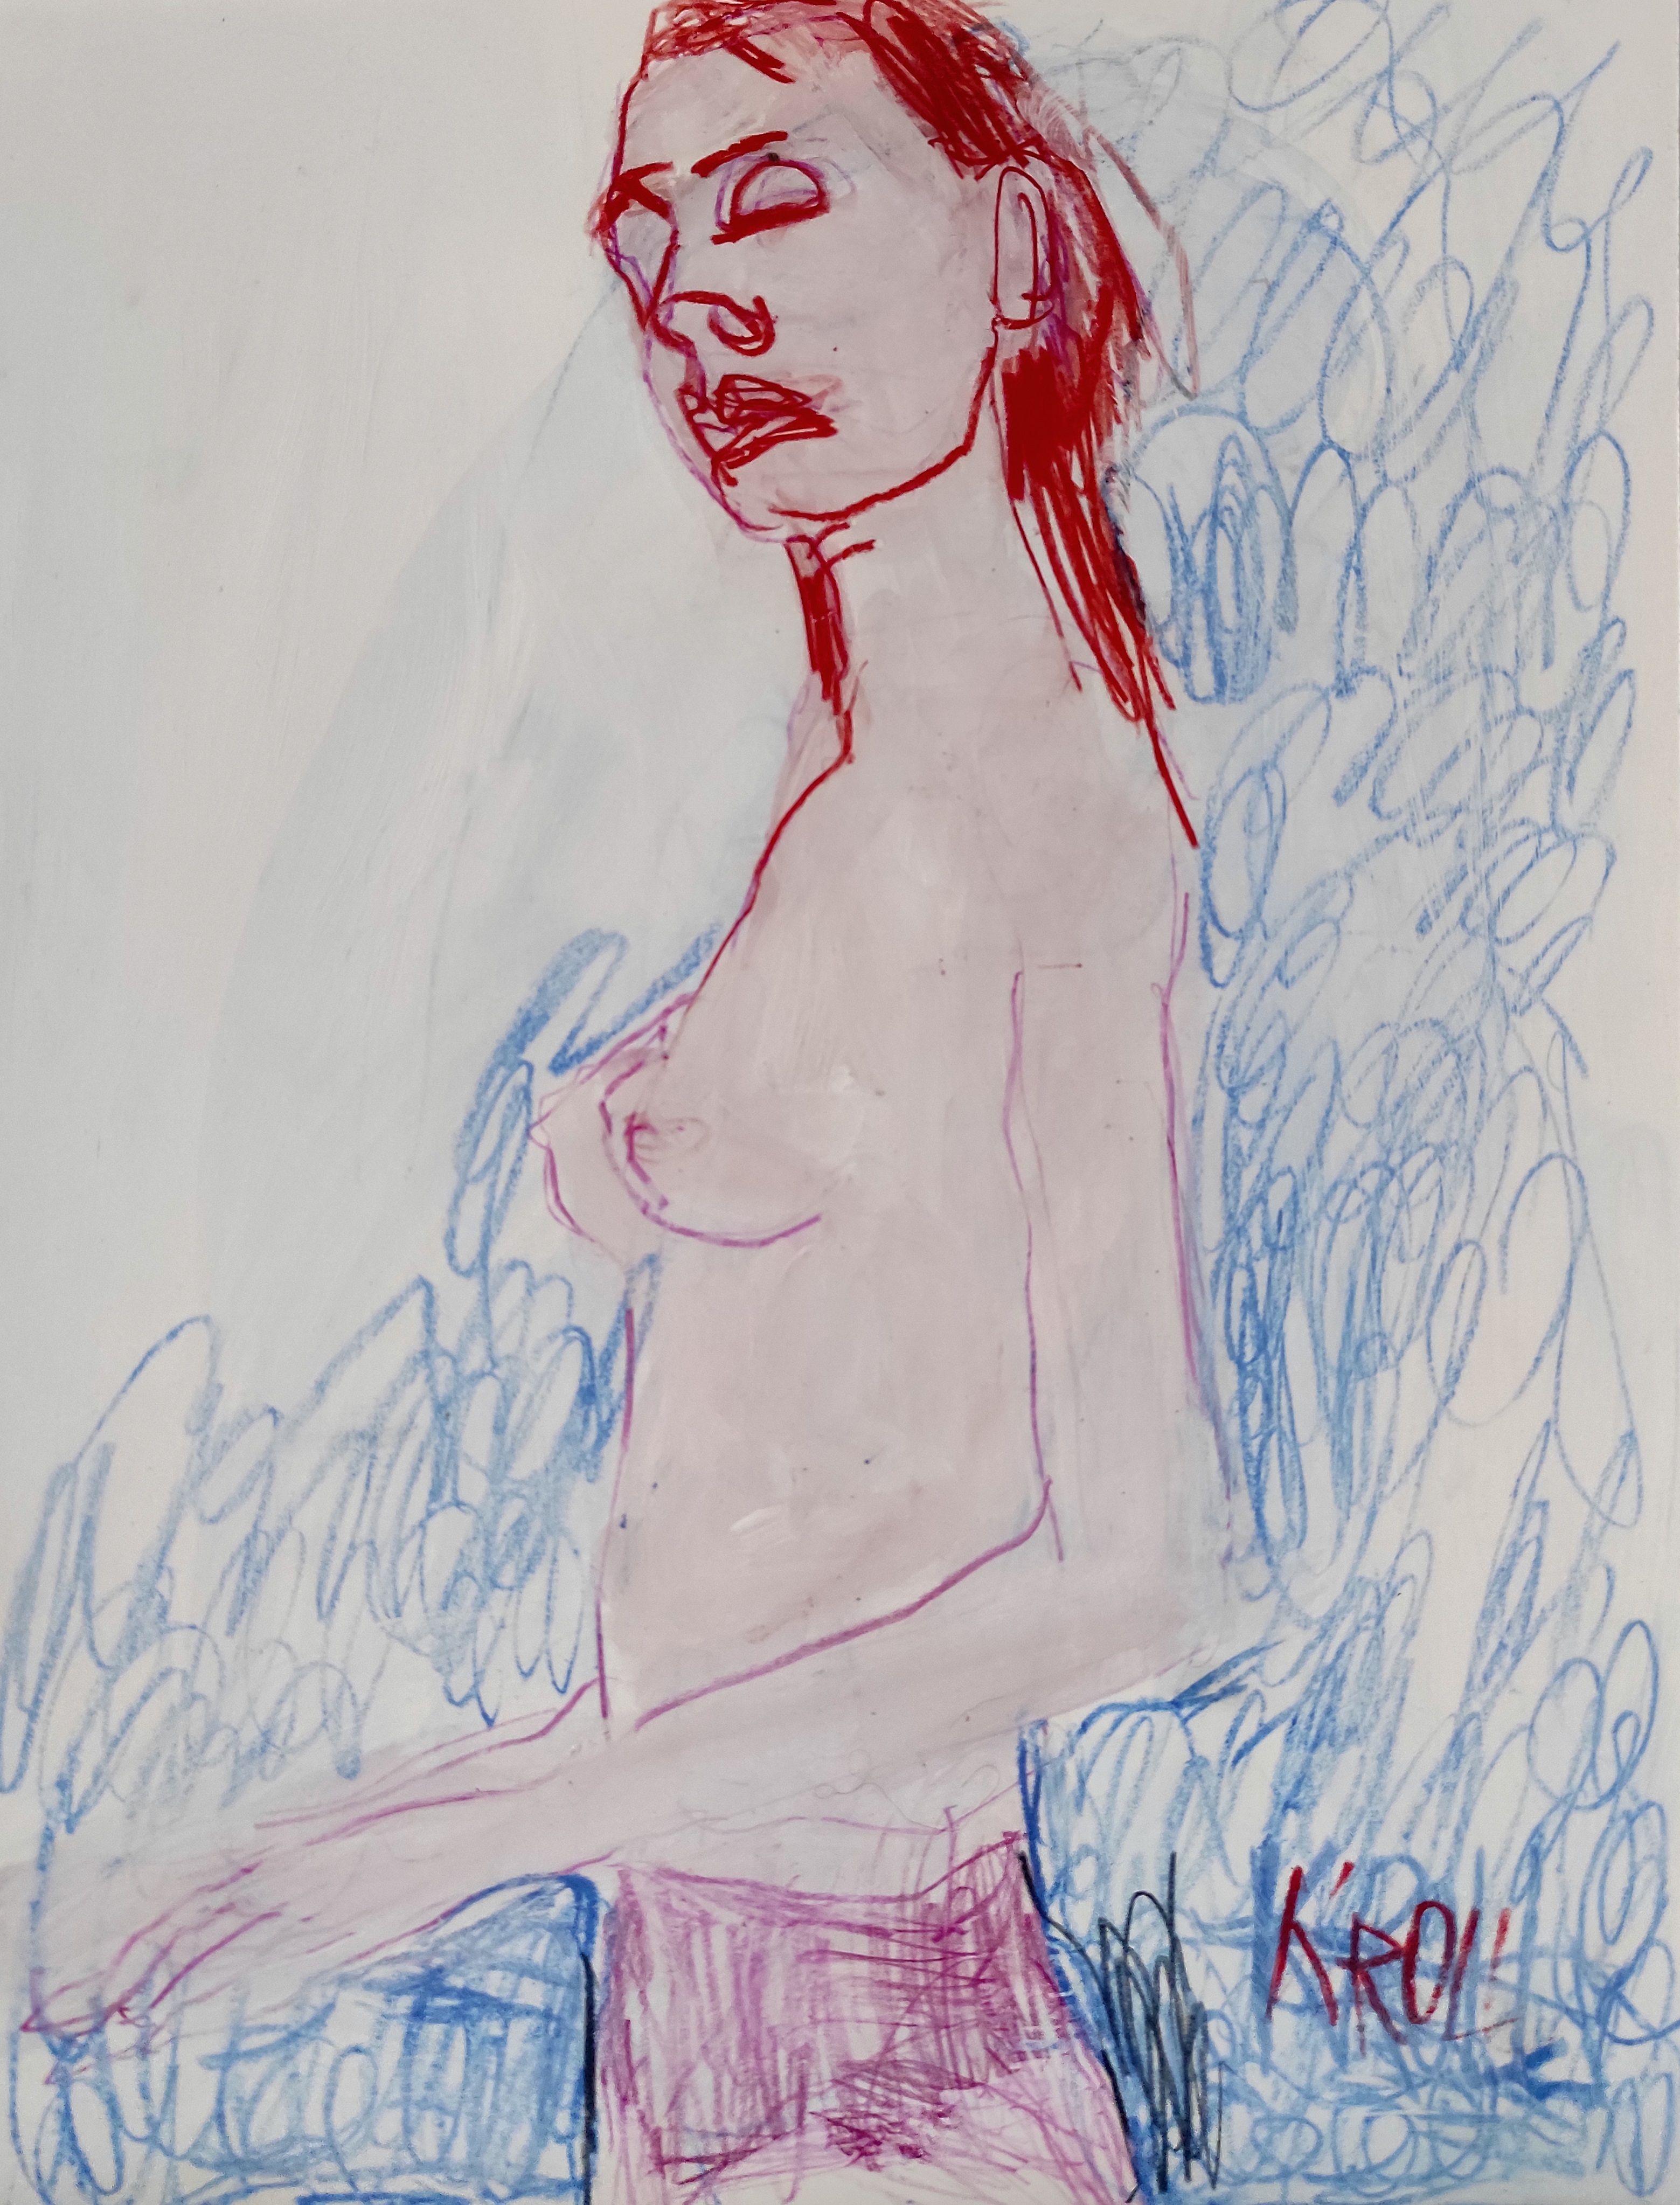 Femme debout semi-nue, dessin, crayon/crayon coloré sur papier - Art de Barbara Kroll